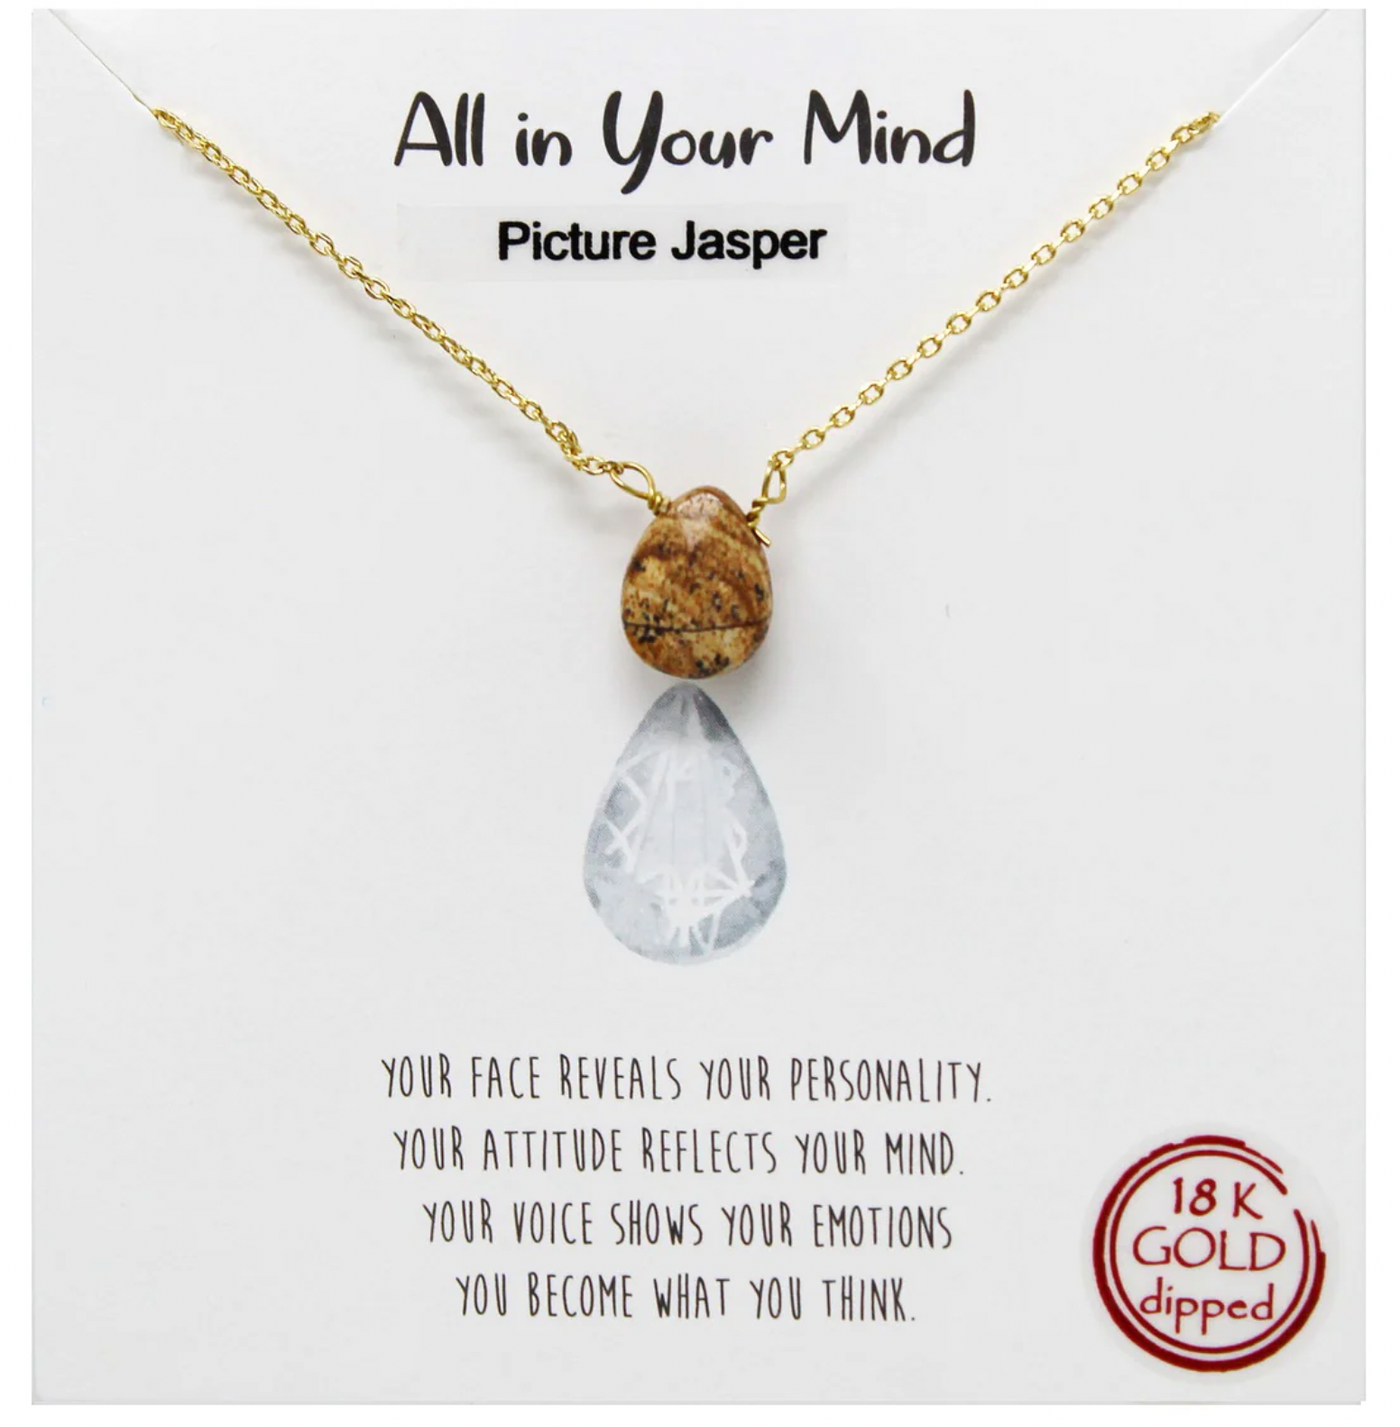 All In Your Mind: Semi Precious Stone Pendant - Picture Jasper